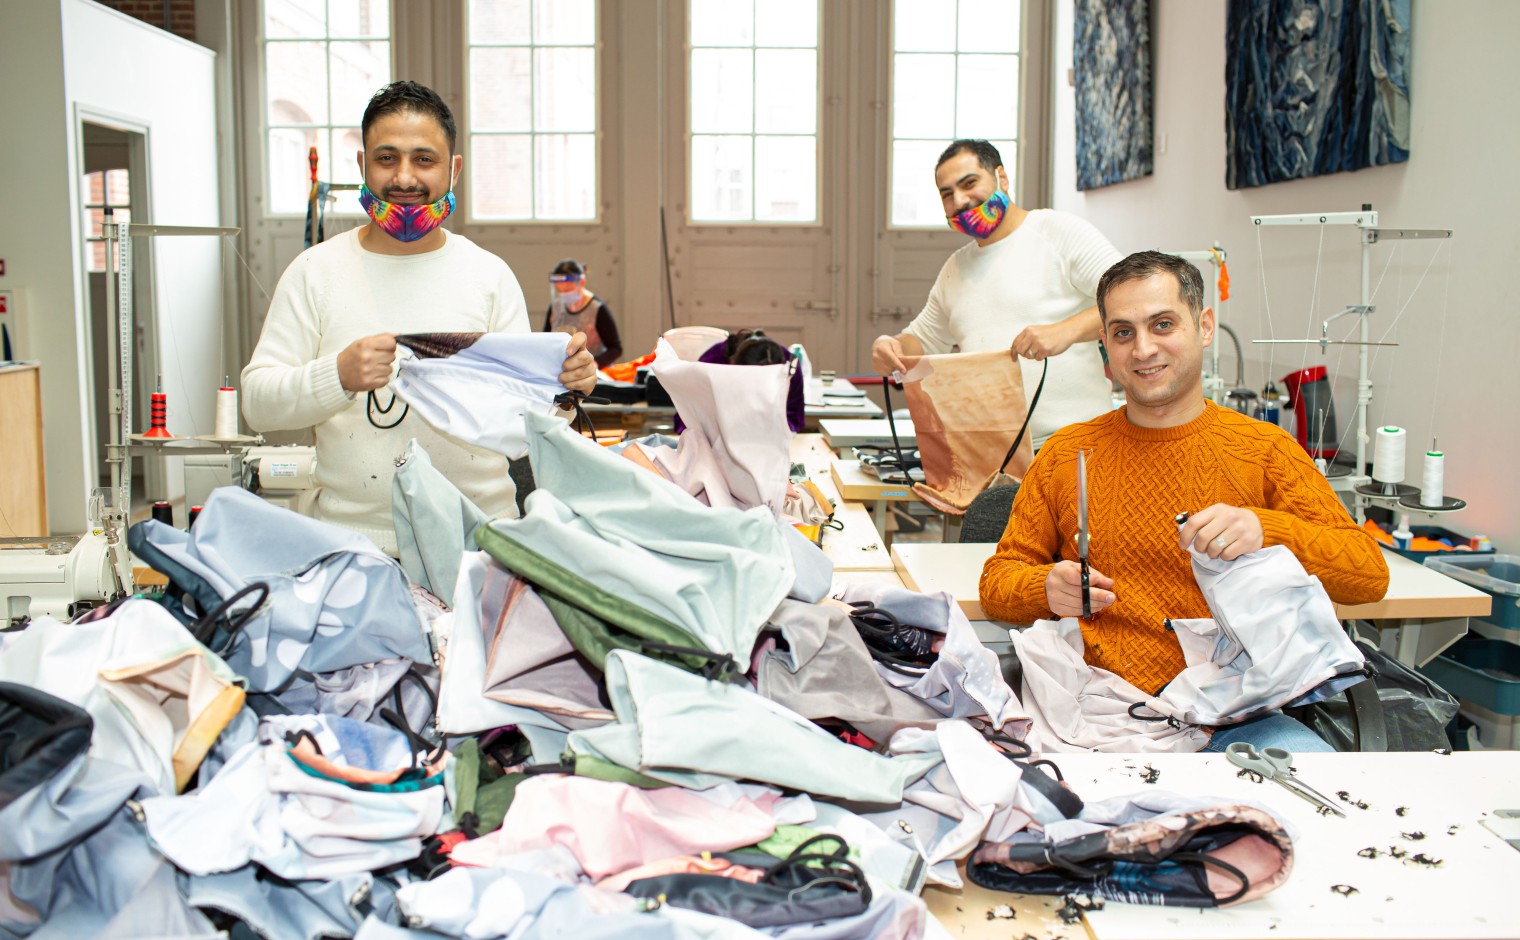 Impact case: Stichting DOEN investeerde in duurzame textielstudio Makers Unite.